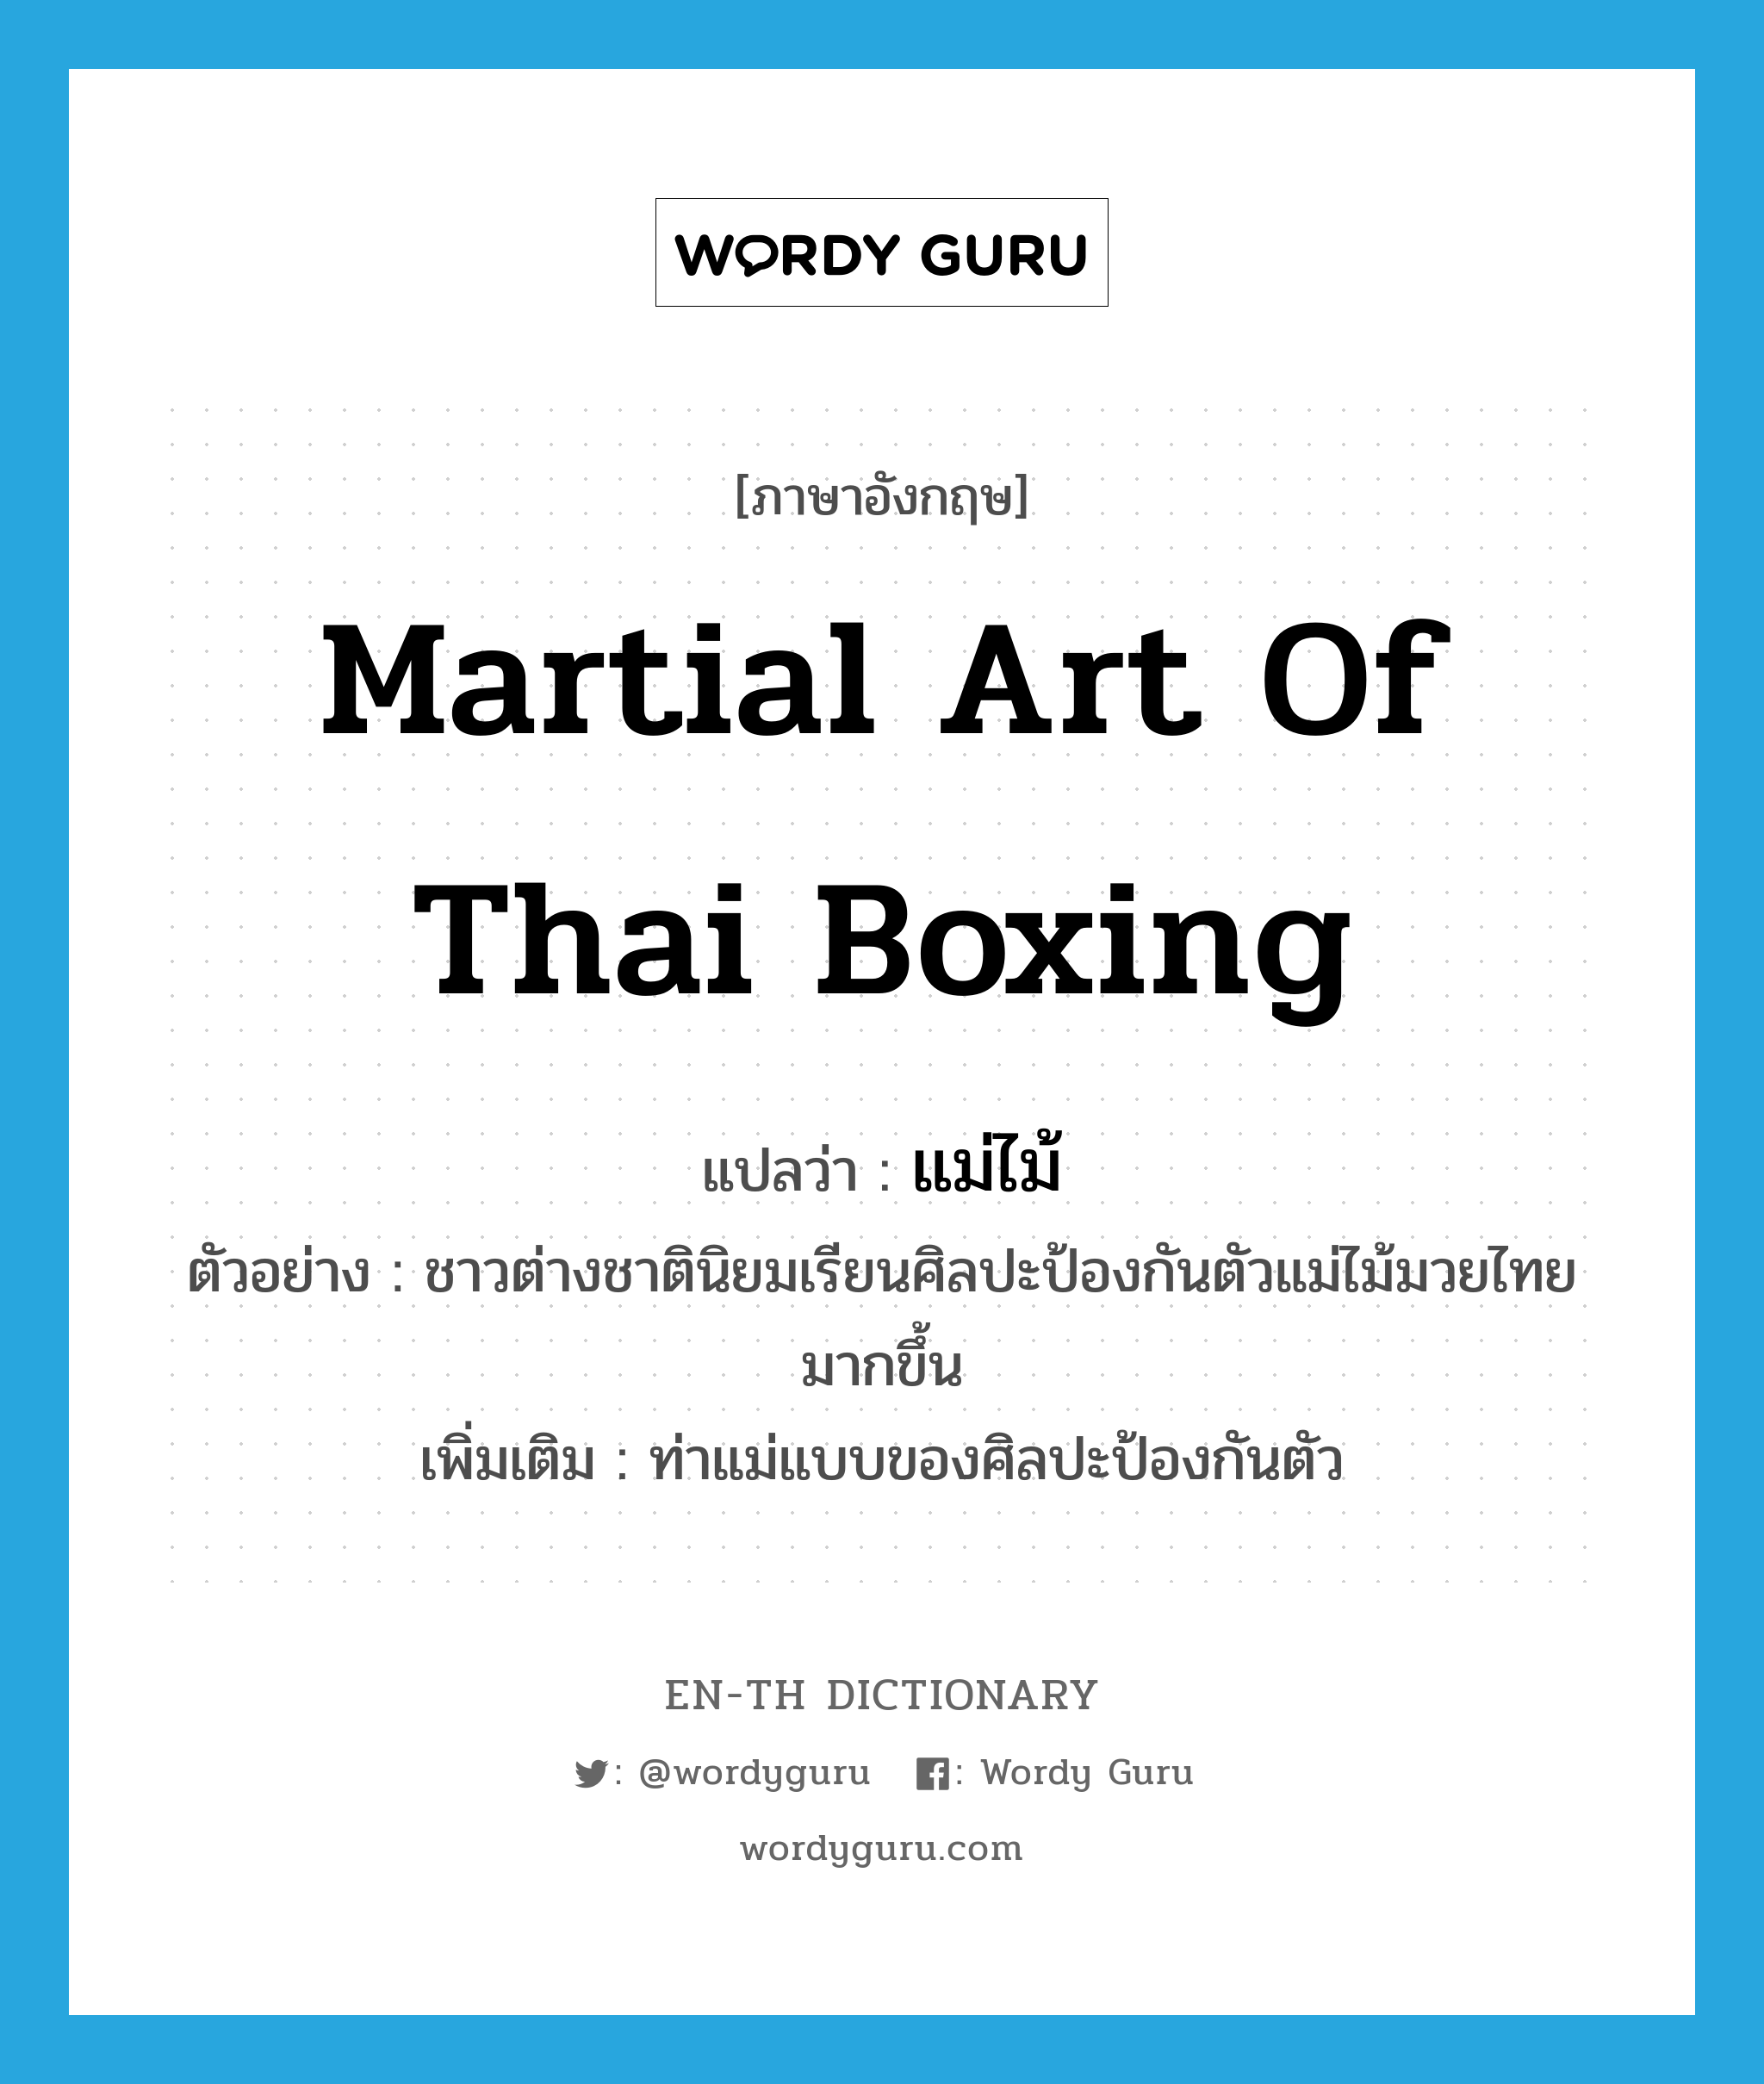 martial art of Thai boxing แปลว่า?, คำศัพท์ภาษาอังกฤษ martial art of Thai boxing แปลว่า แม่ไม้ ประเภท N ตัวอย่าง ชาวต่างชาตินิยมเรียนศิลปะป้องกันตัวแม่ไม้มวยไทยมากขึ้น เพิ่มเติม ท่าแม่แบบของศิลปะป้องกันตัว หมวด N